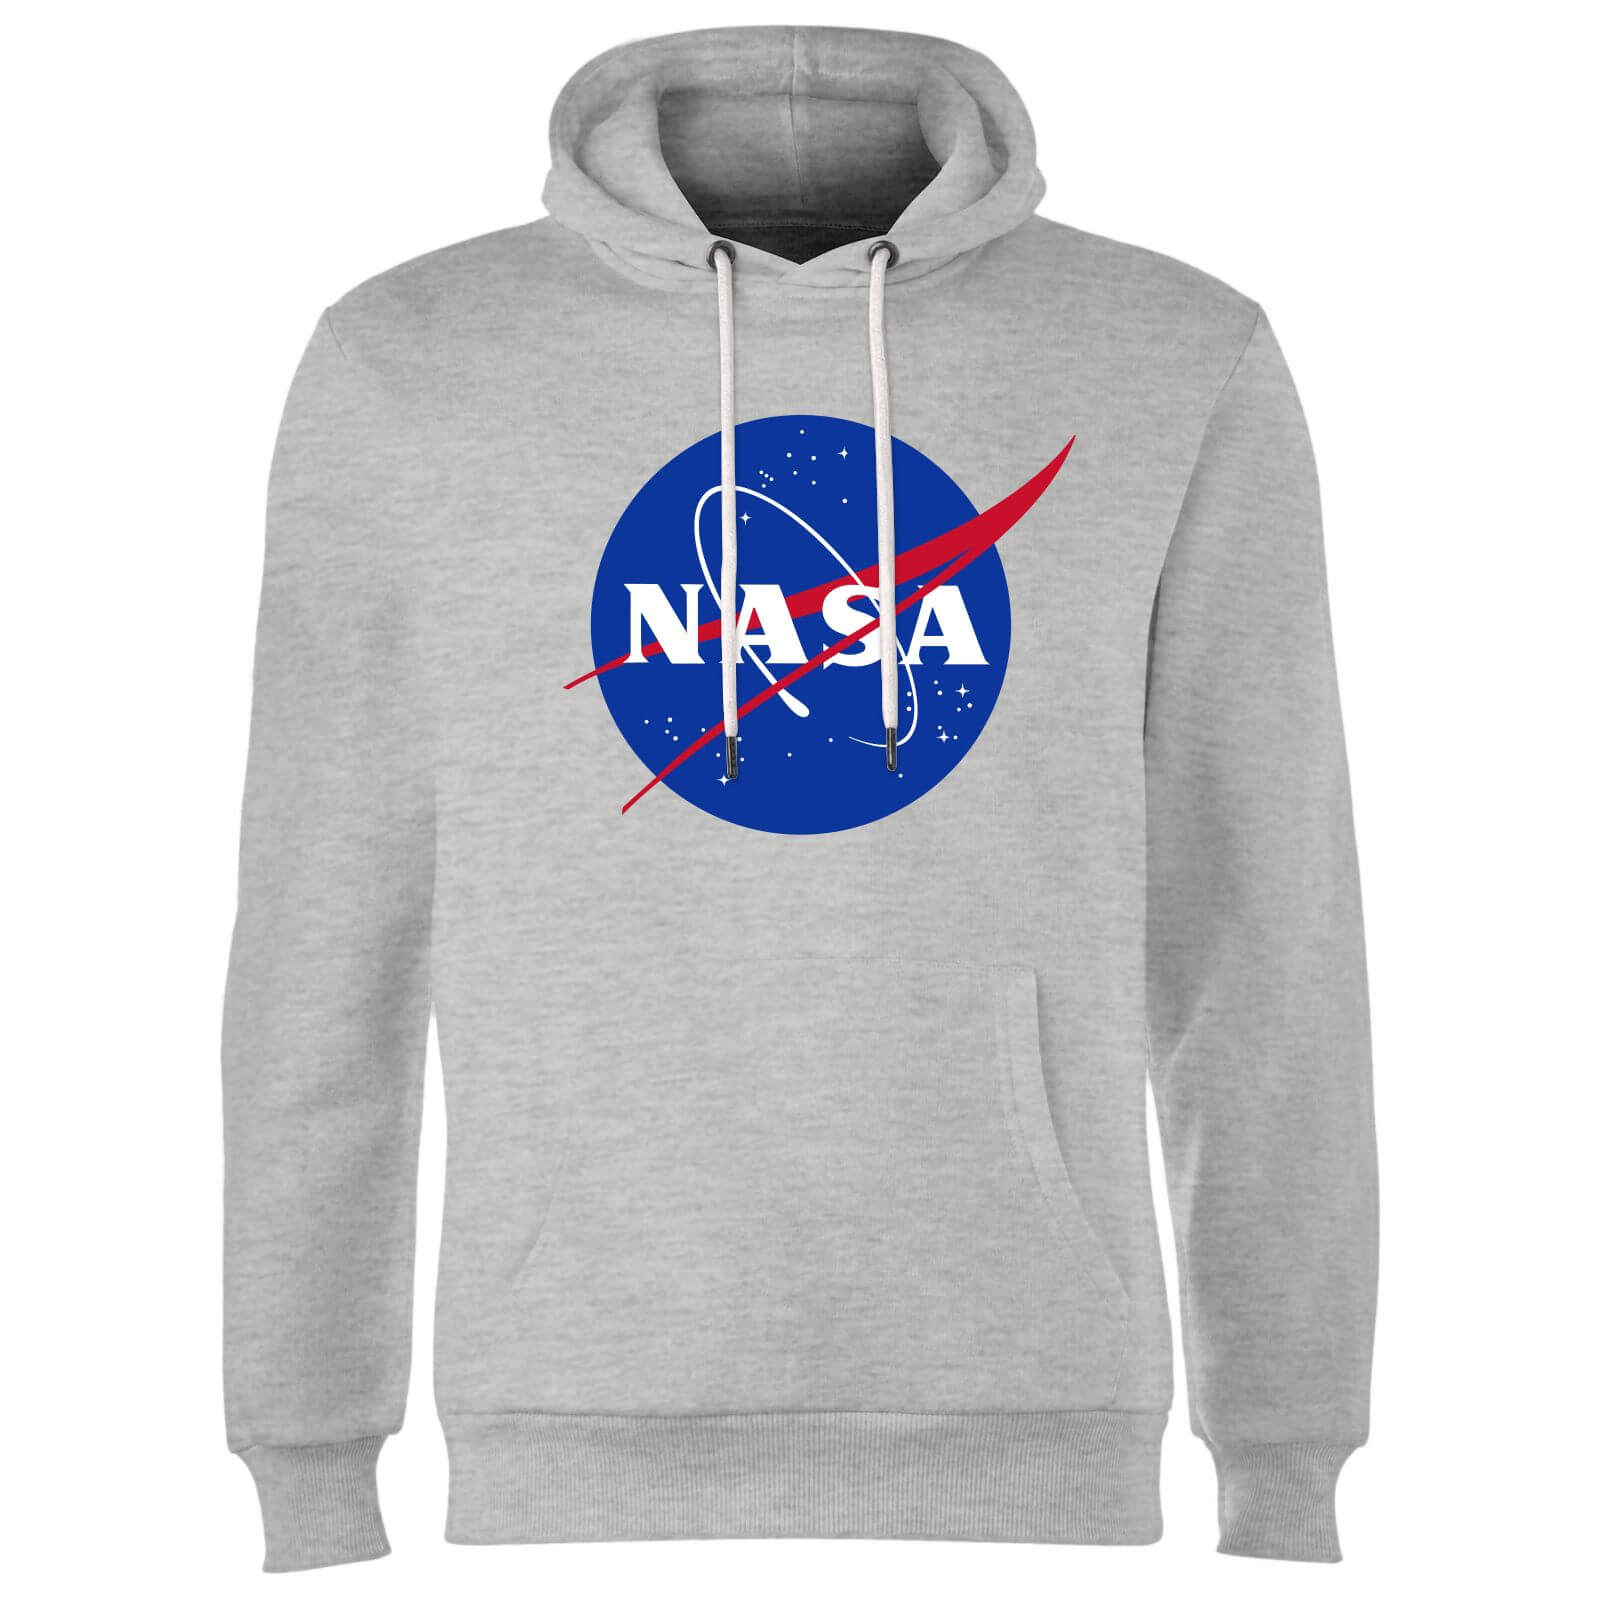 Sudaderas con el logo de la NASA